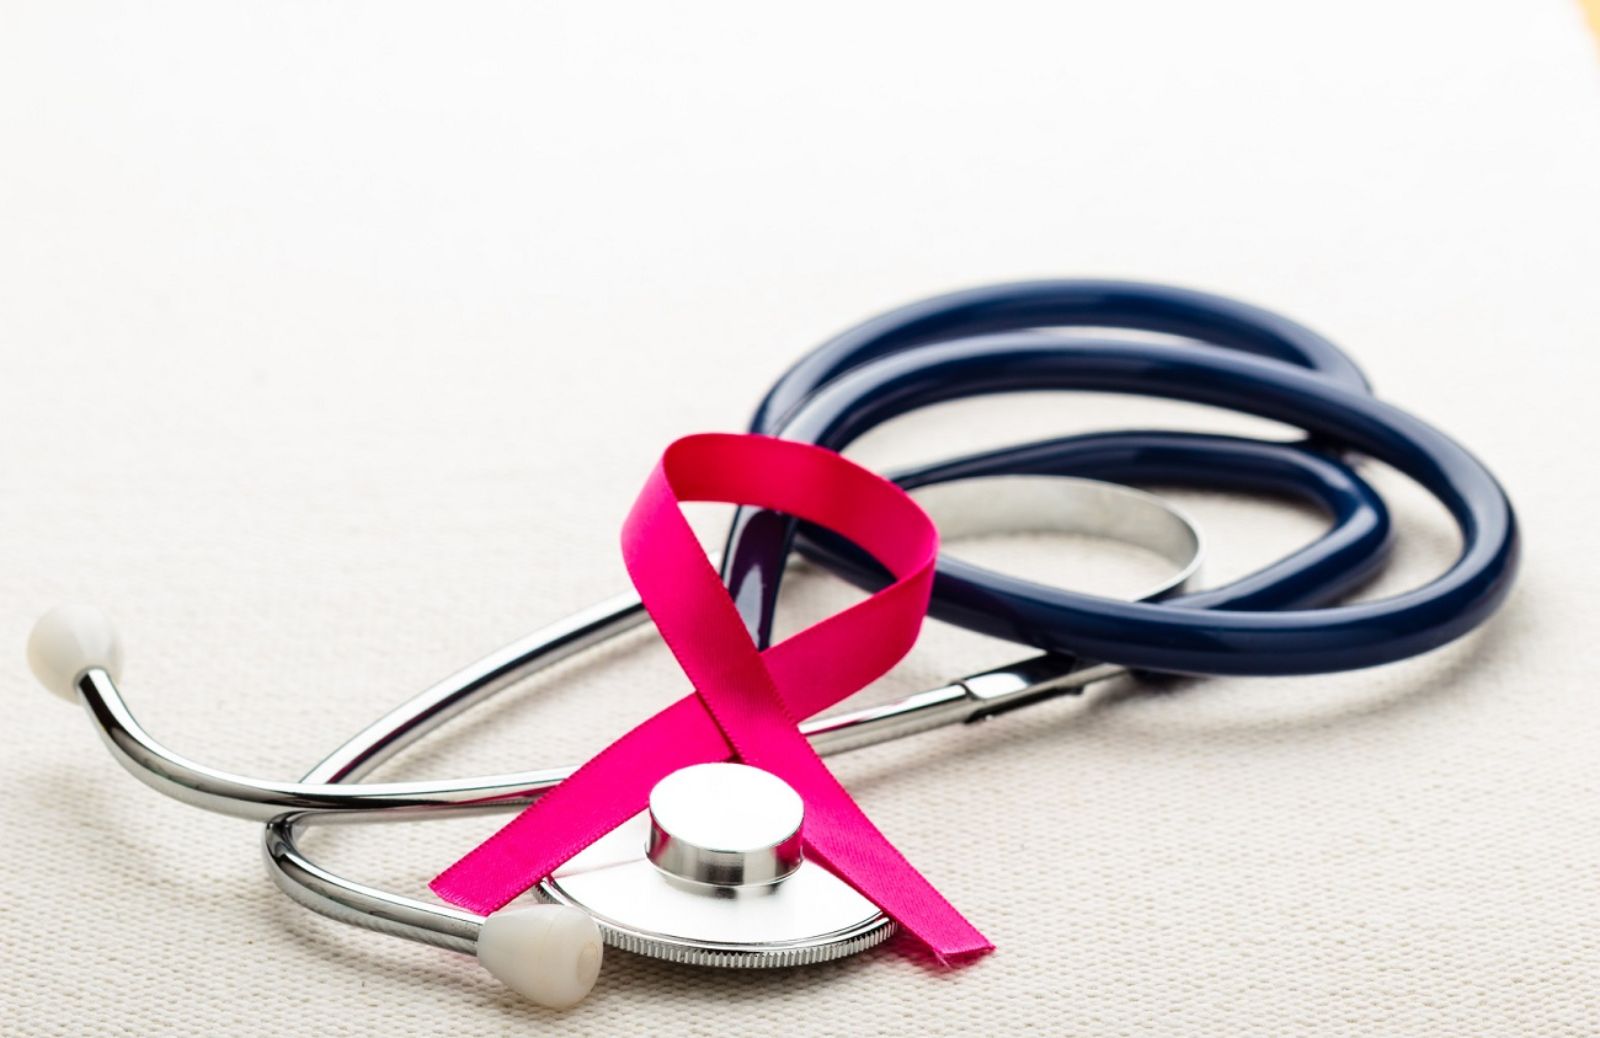 Tumore al seno, cure migliori senza bisogno di biopsie